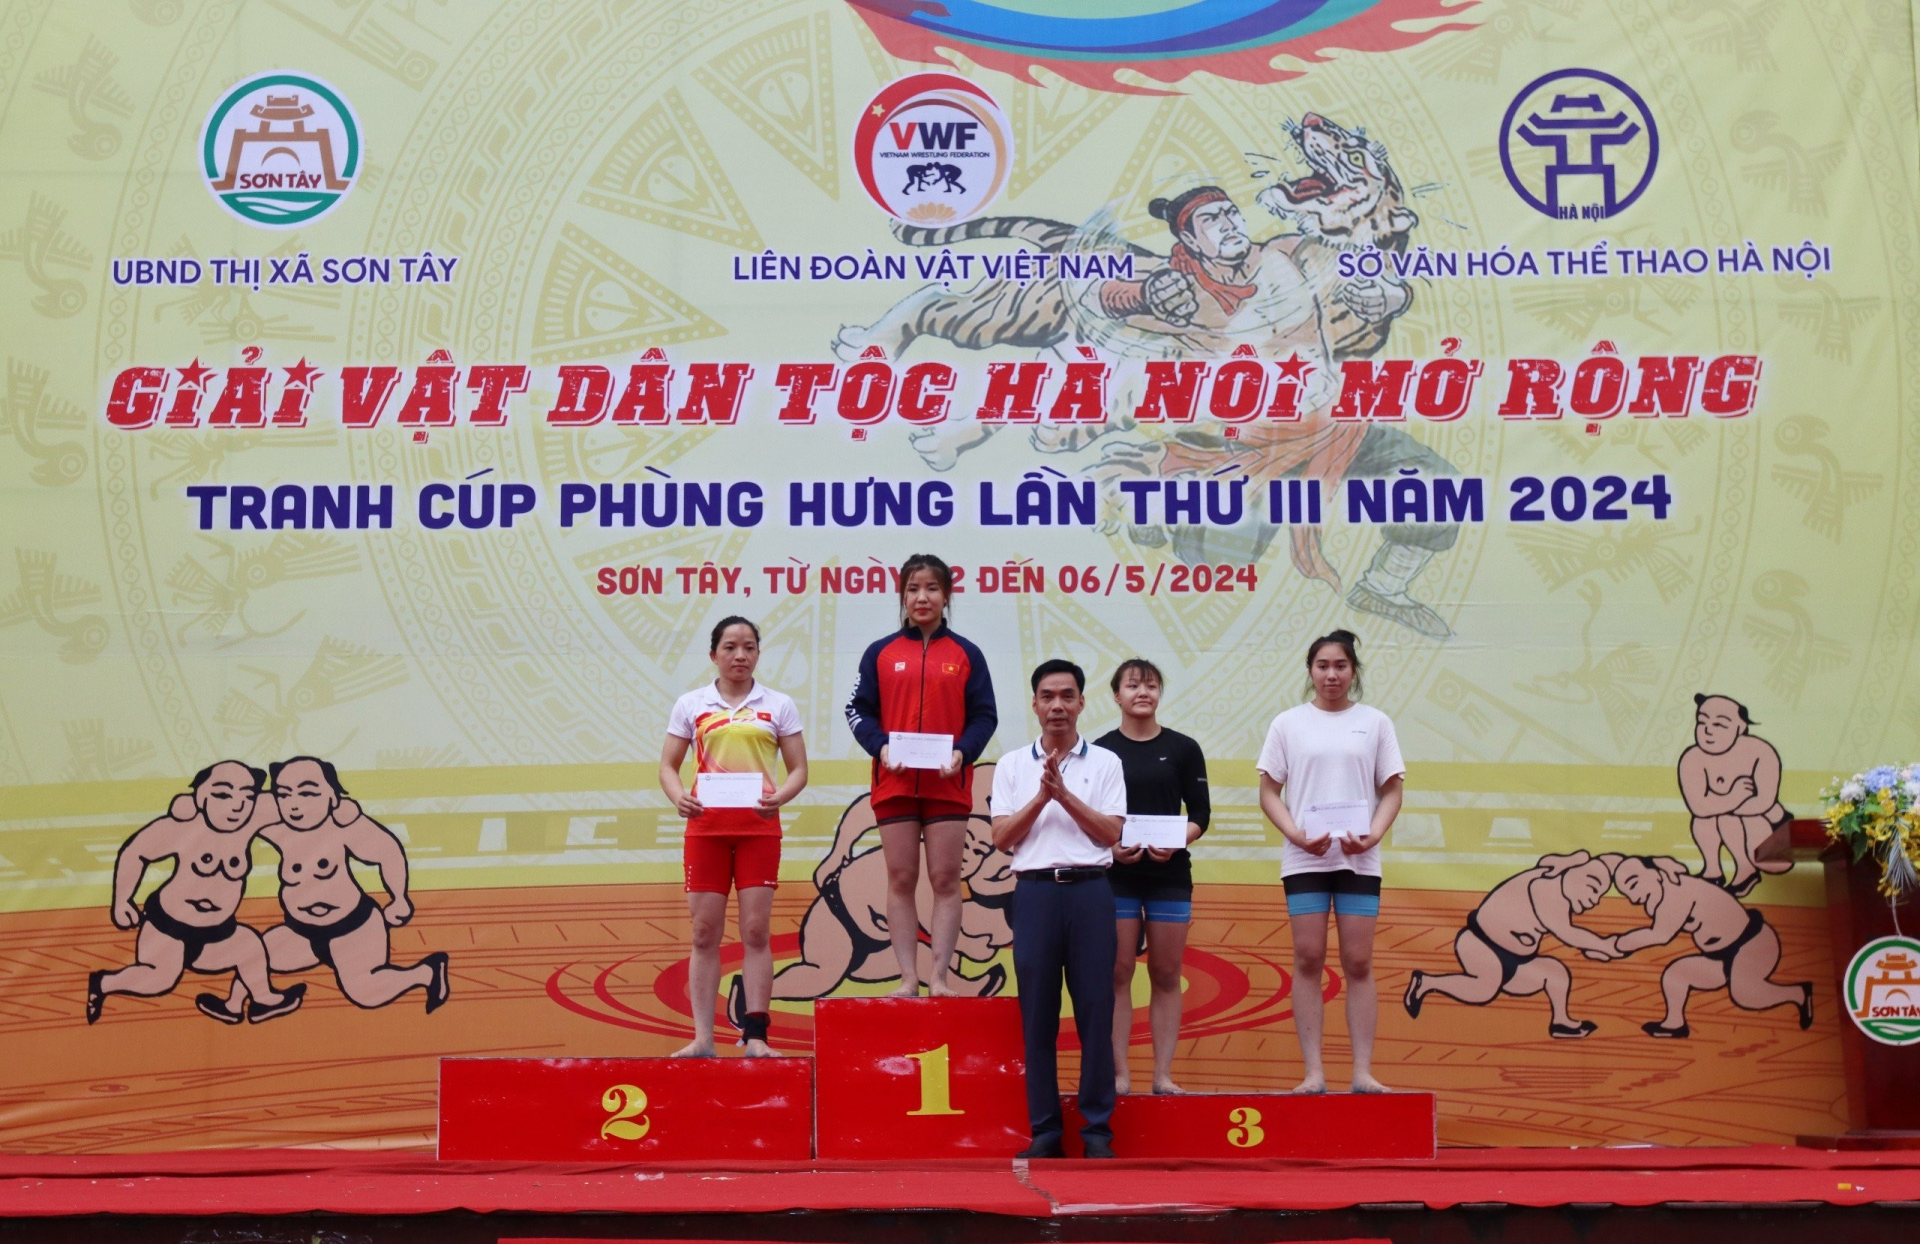 Đoàn Hà Nội giành cúp vô địch Giải vật dân tộc Hà Nội mở rộng tranh cúp Phùng Hưng lần thứ III năm 2024